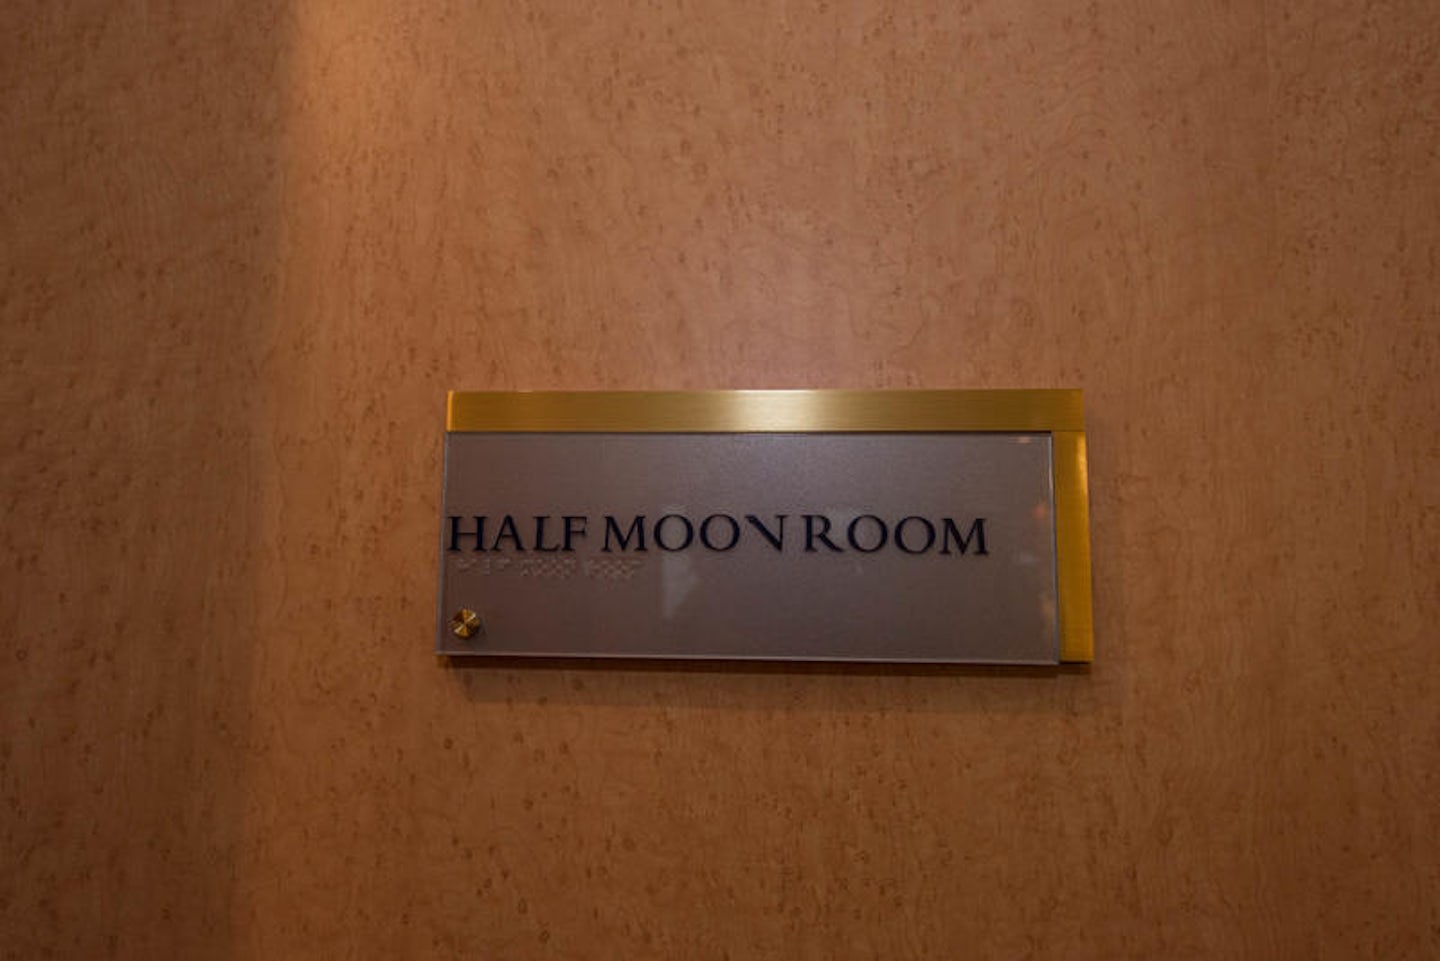 Half Moon Room on Noordam